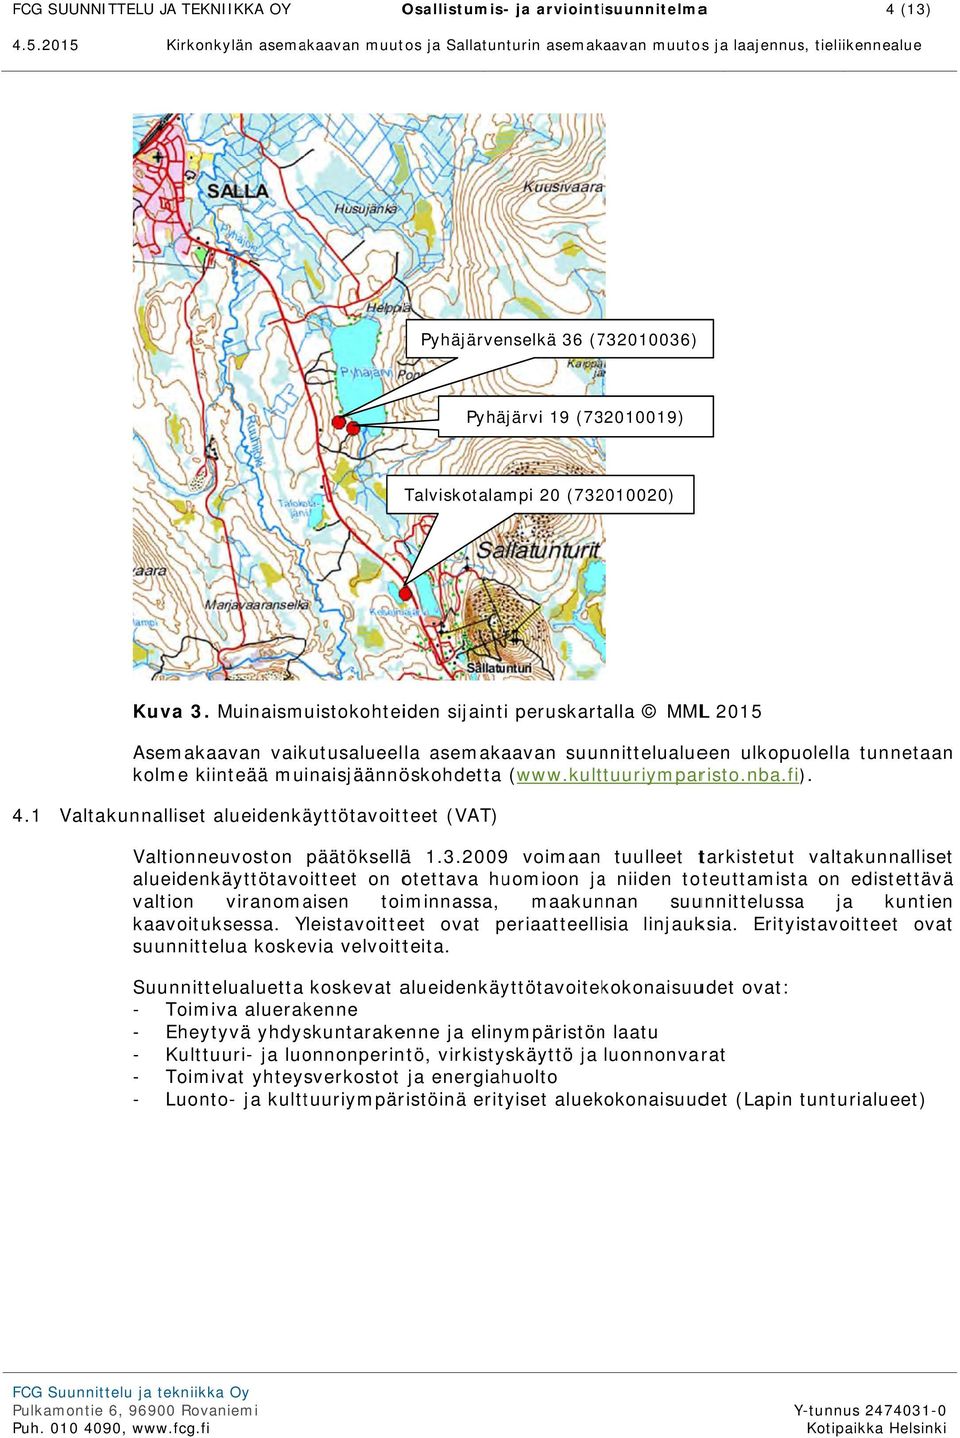 nba.fi). 4.1 Valtakunnalliset alueidenkäyttötavoitteet (VAT) Valtionneuvoston päätöksellää 1.3.